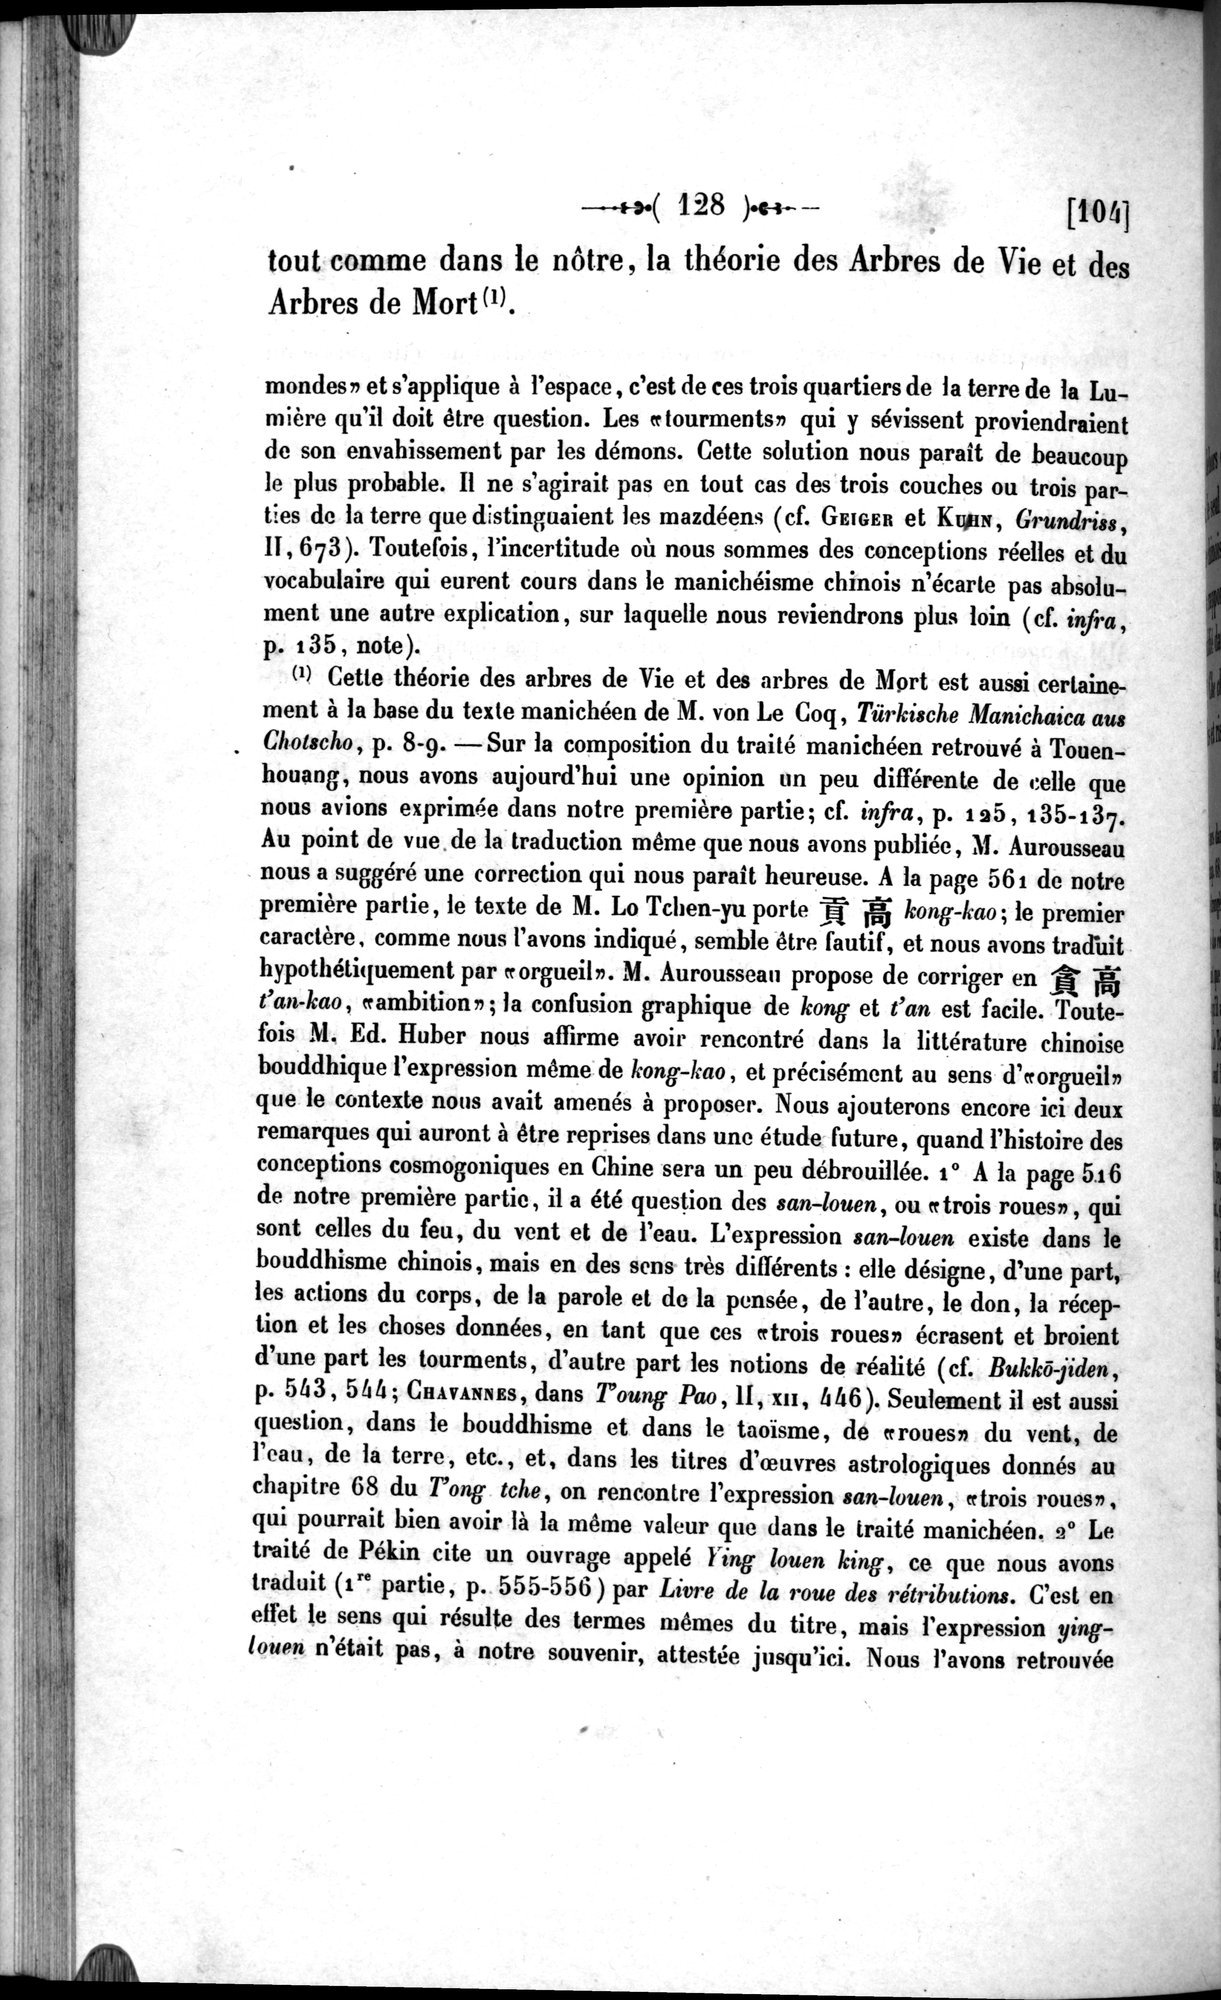 Un traité manichéen retrouvé en Chine : vol.1 / 138 ページ（白黒高解像度画像）